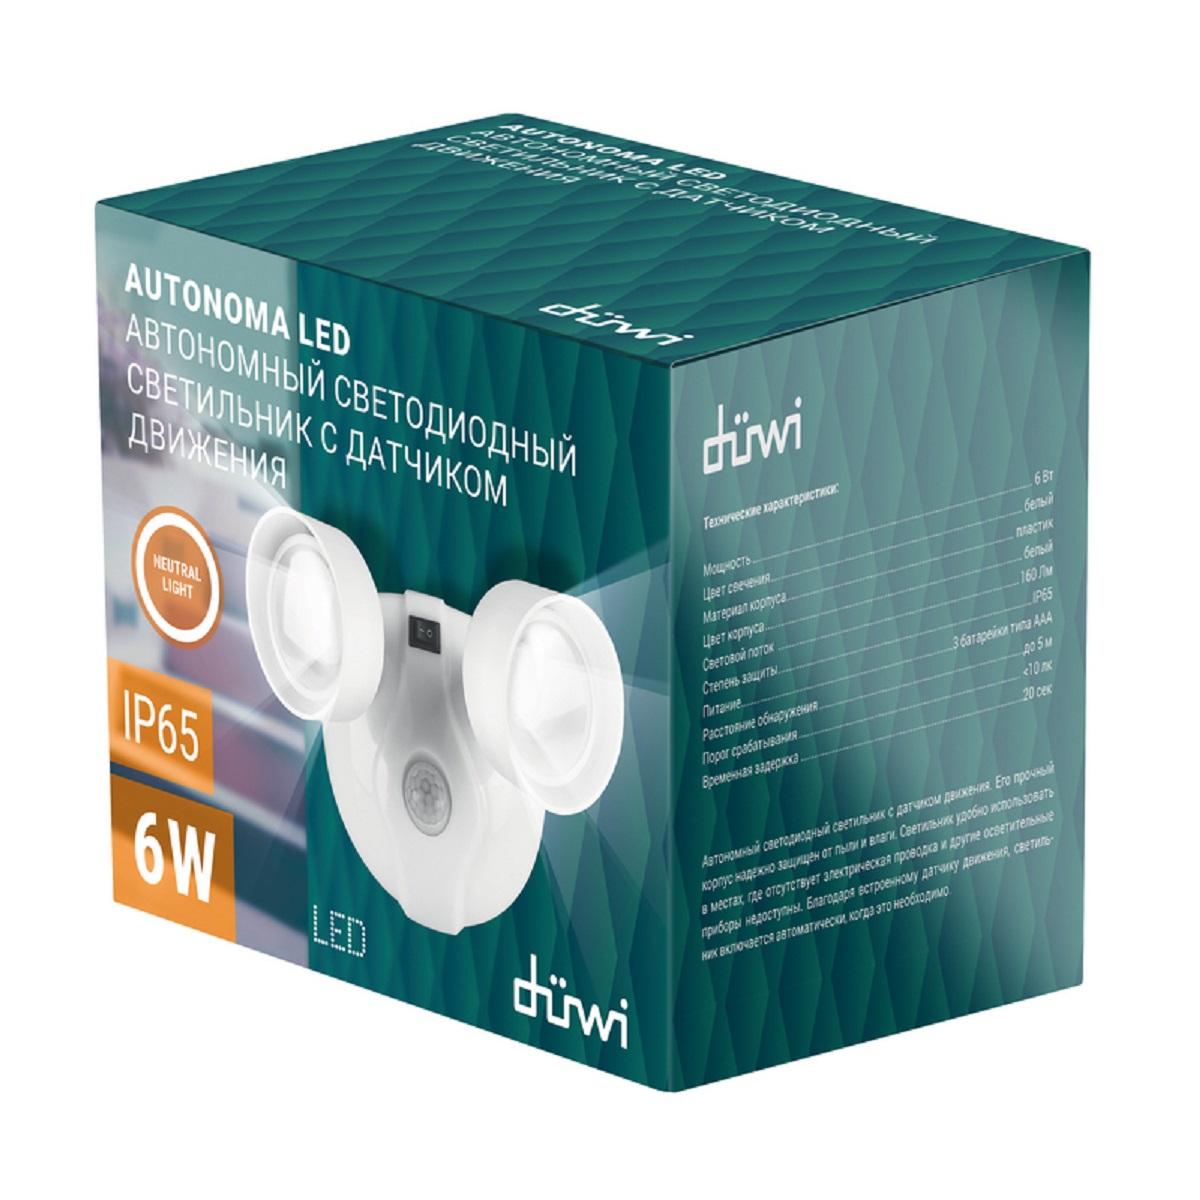 автономный настенный светодиодный светильник duwi autonoma led с датчиком движ. 24301 4